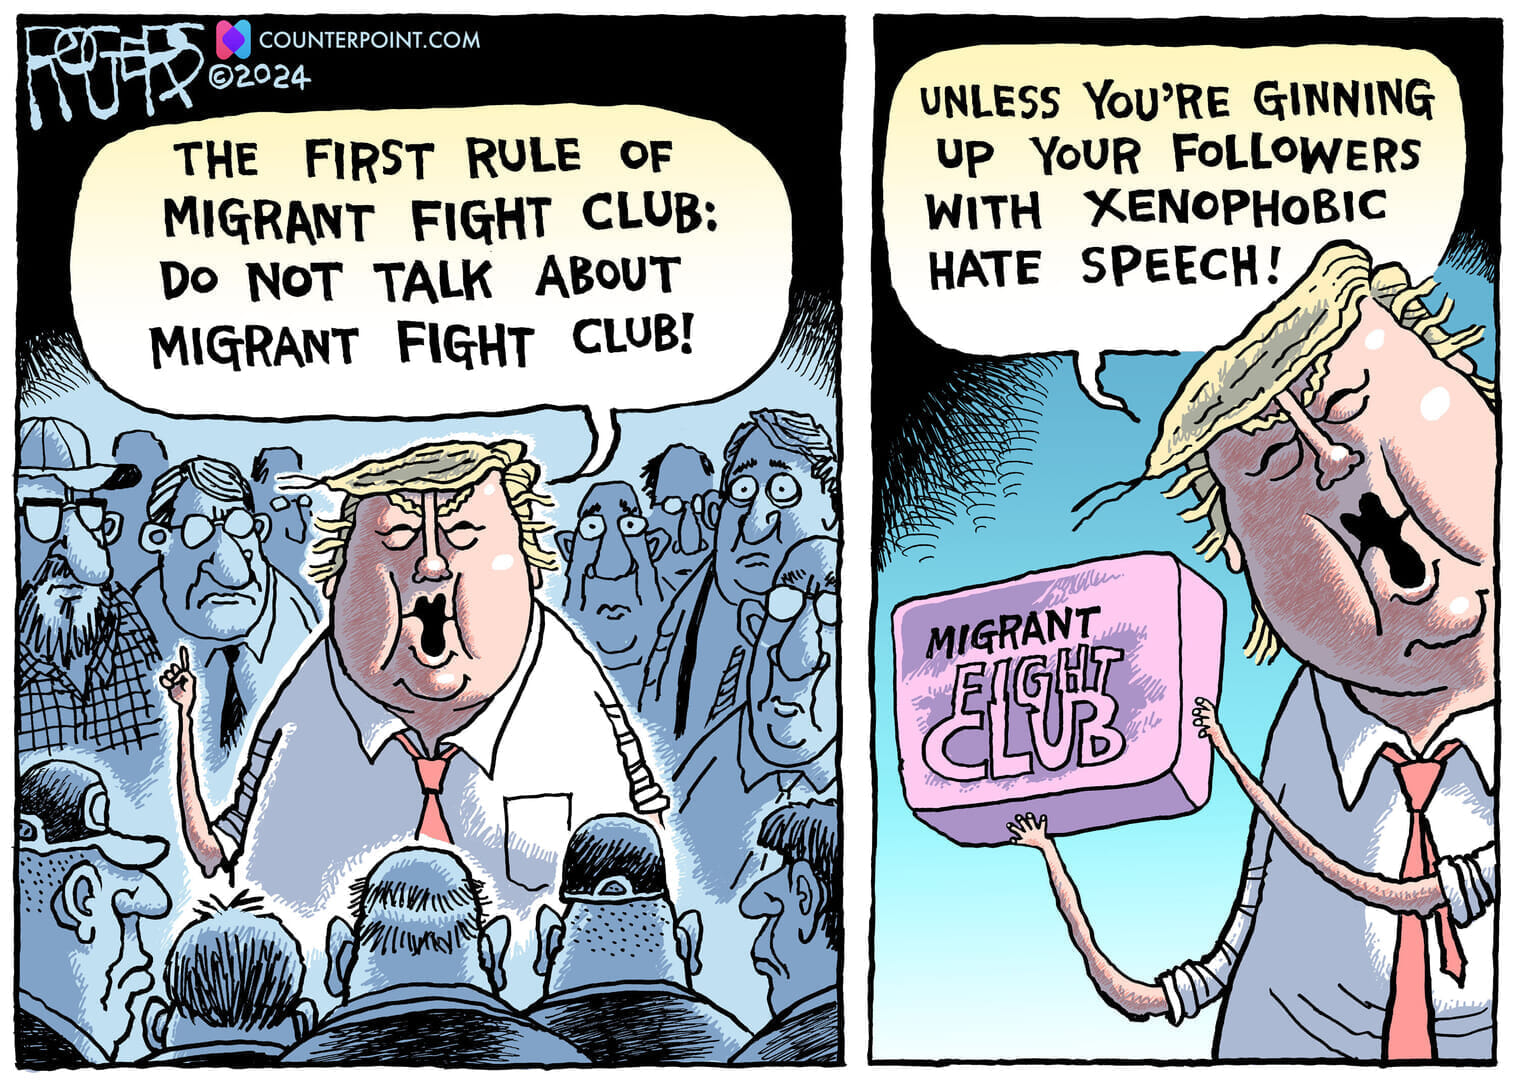 トランプ提唱のお下劣「移民ファイトクラブ」に矛盾あり【風刺画で読むアメリカ】